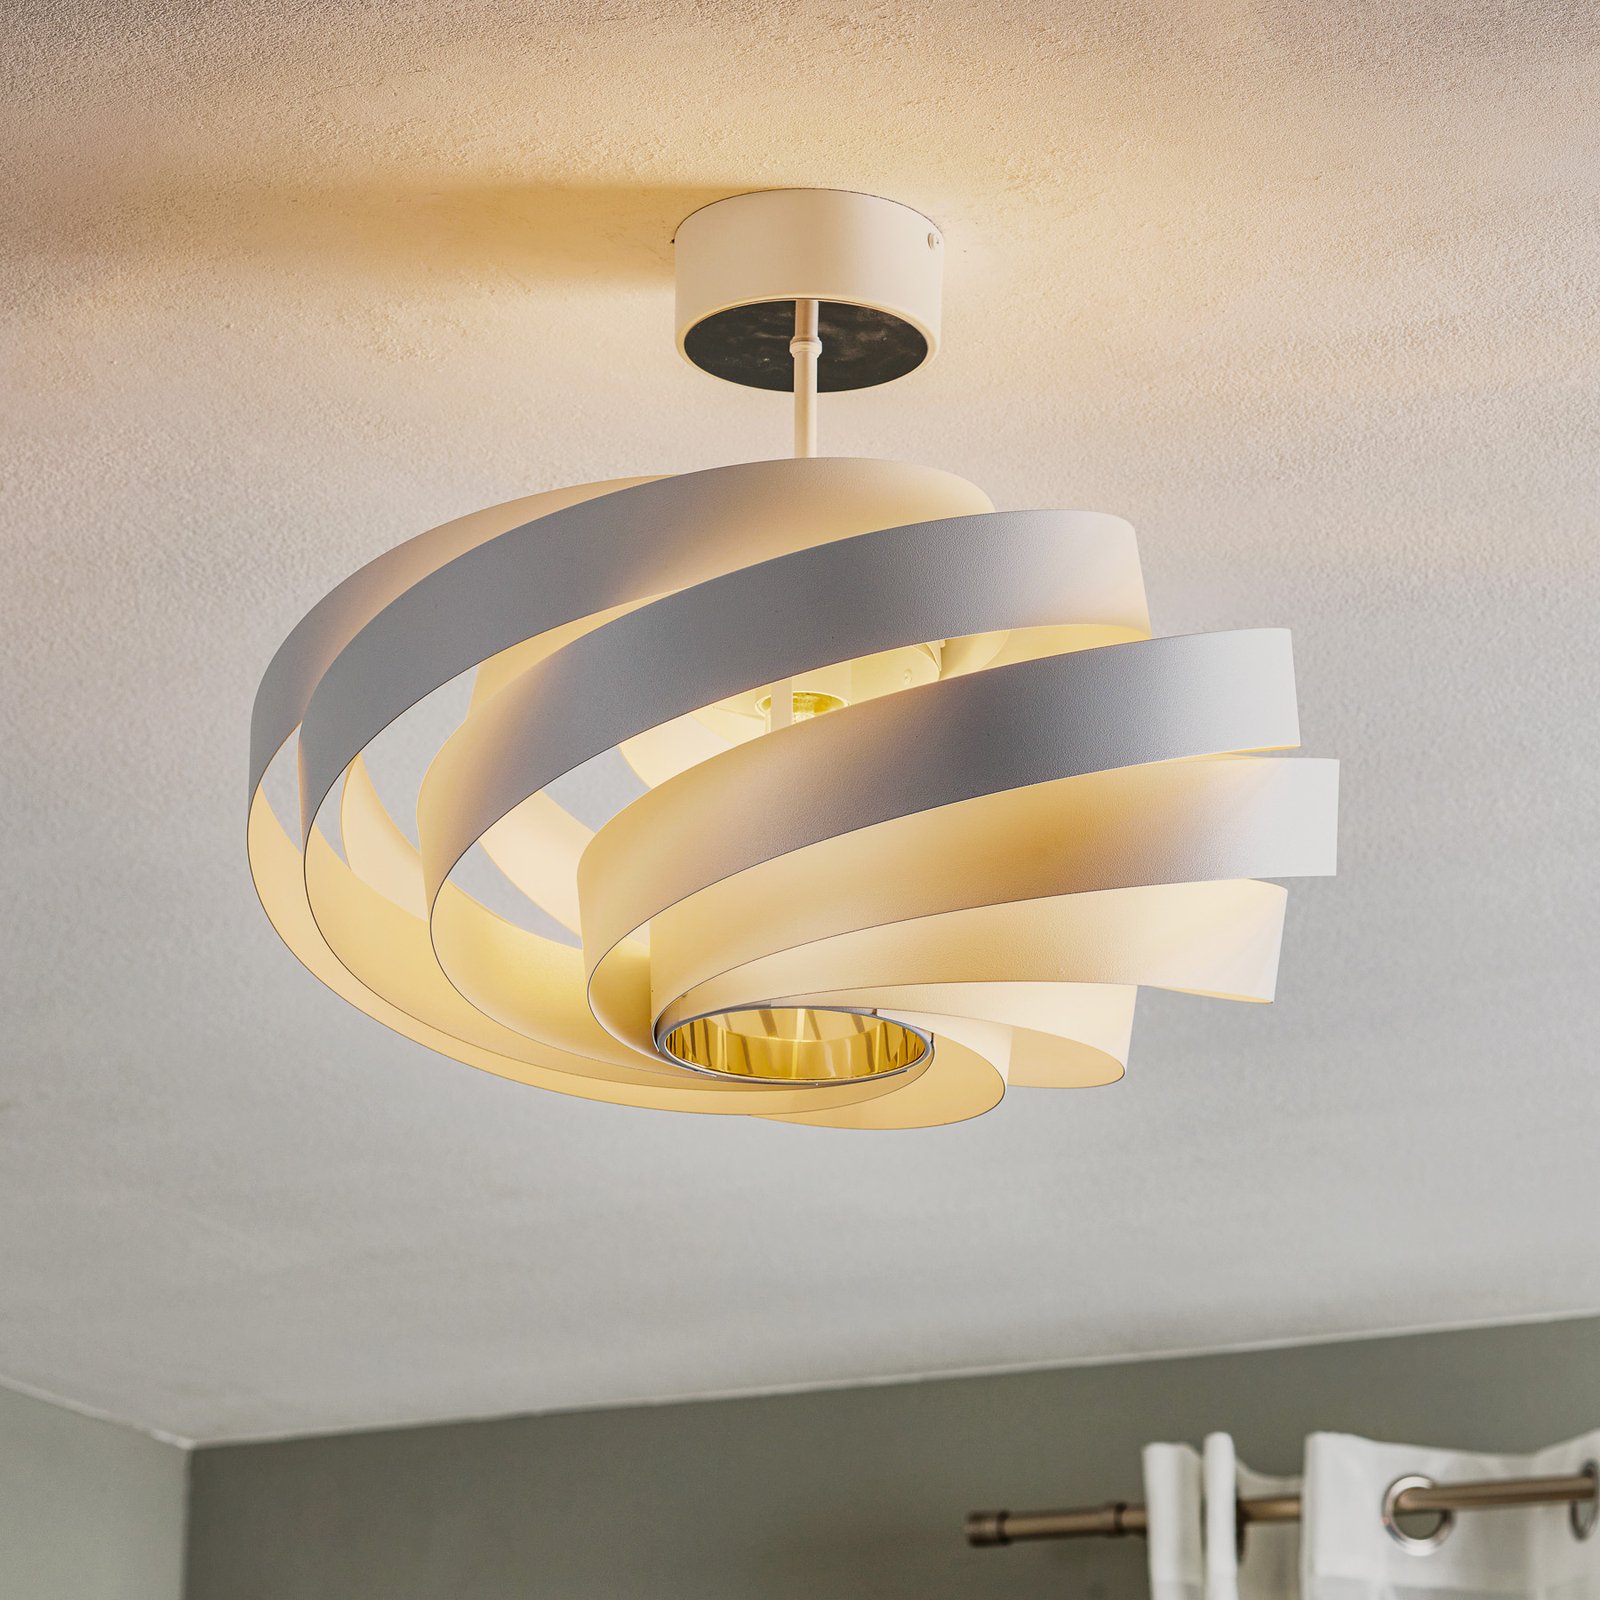 Vento ceiling light, white Ø 50 cm